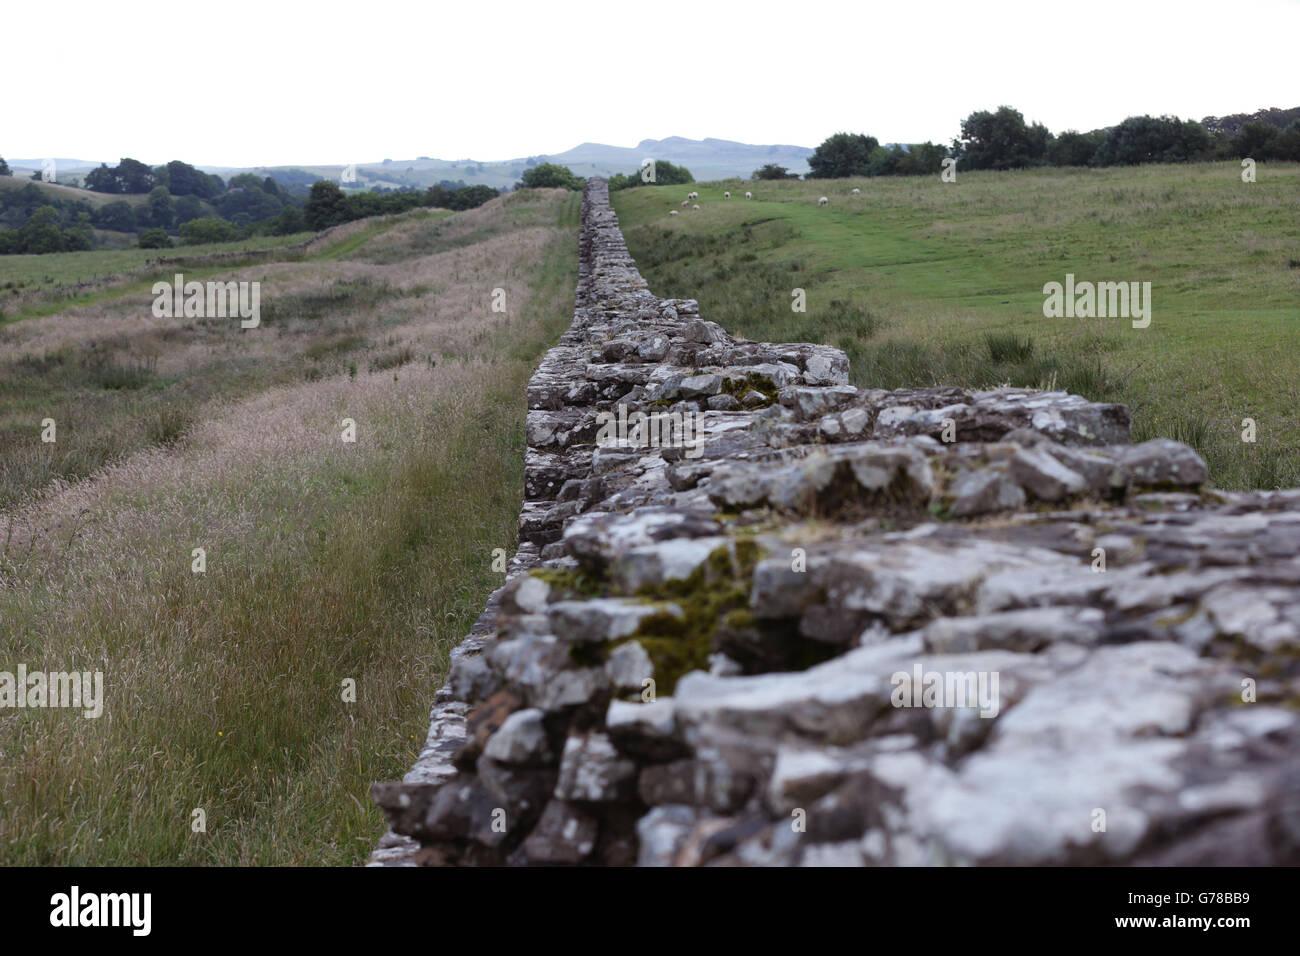 Una sezione del Muro di Adriano vicino al Forte romano di Birdoswald in Cumbria. PREMERE ASSOCIAZIONE foto. Data immagine: Mercoledì 16 luglio 2014. Il credito fotografico dovrebbe essere: Filo Yui Mok/PA Foto Stock